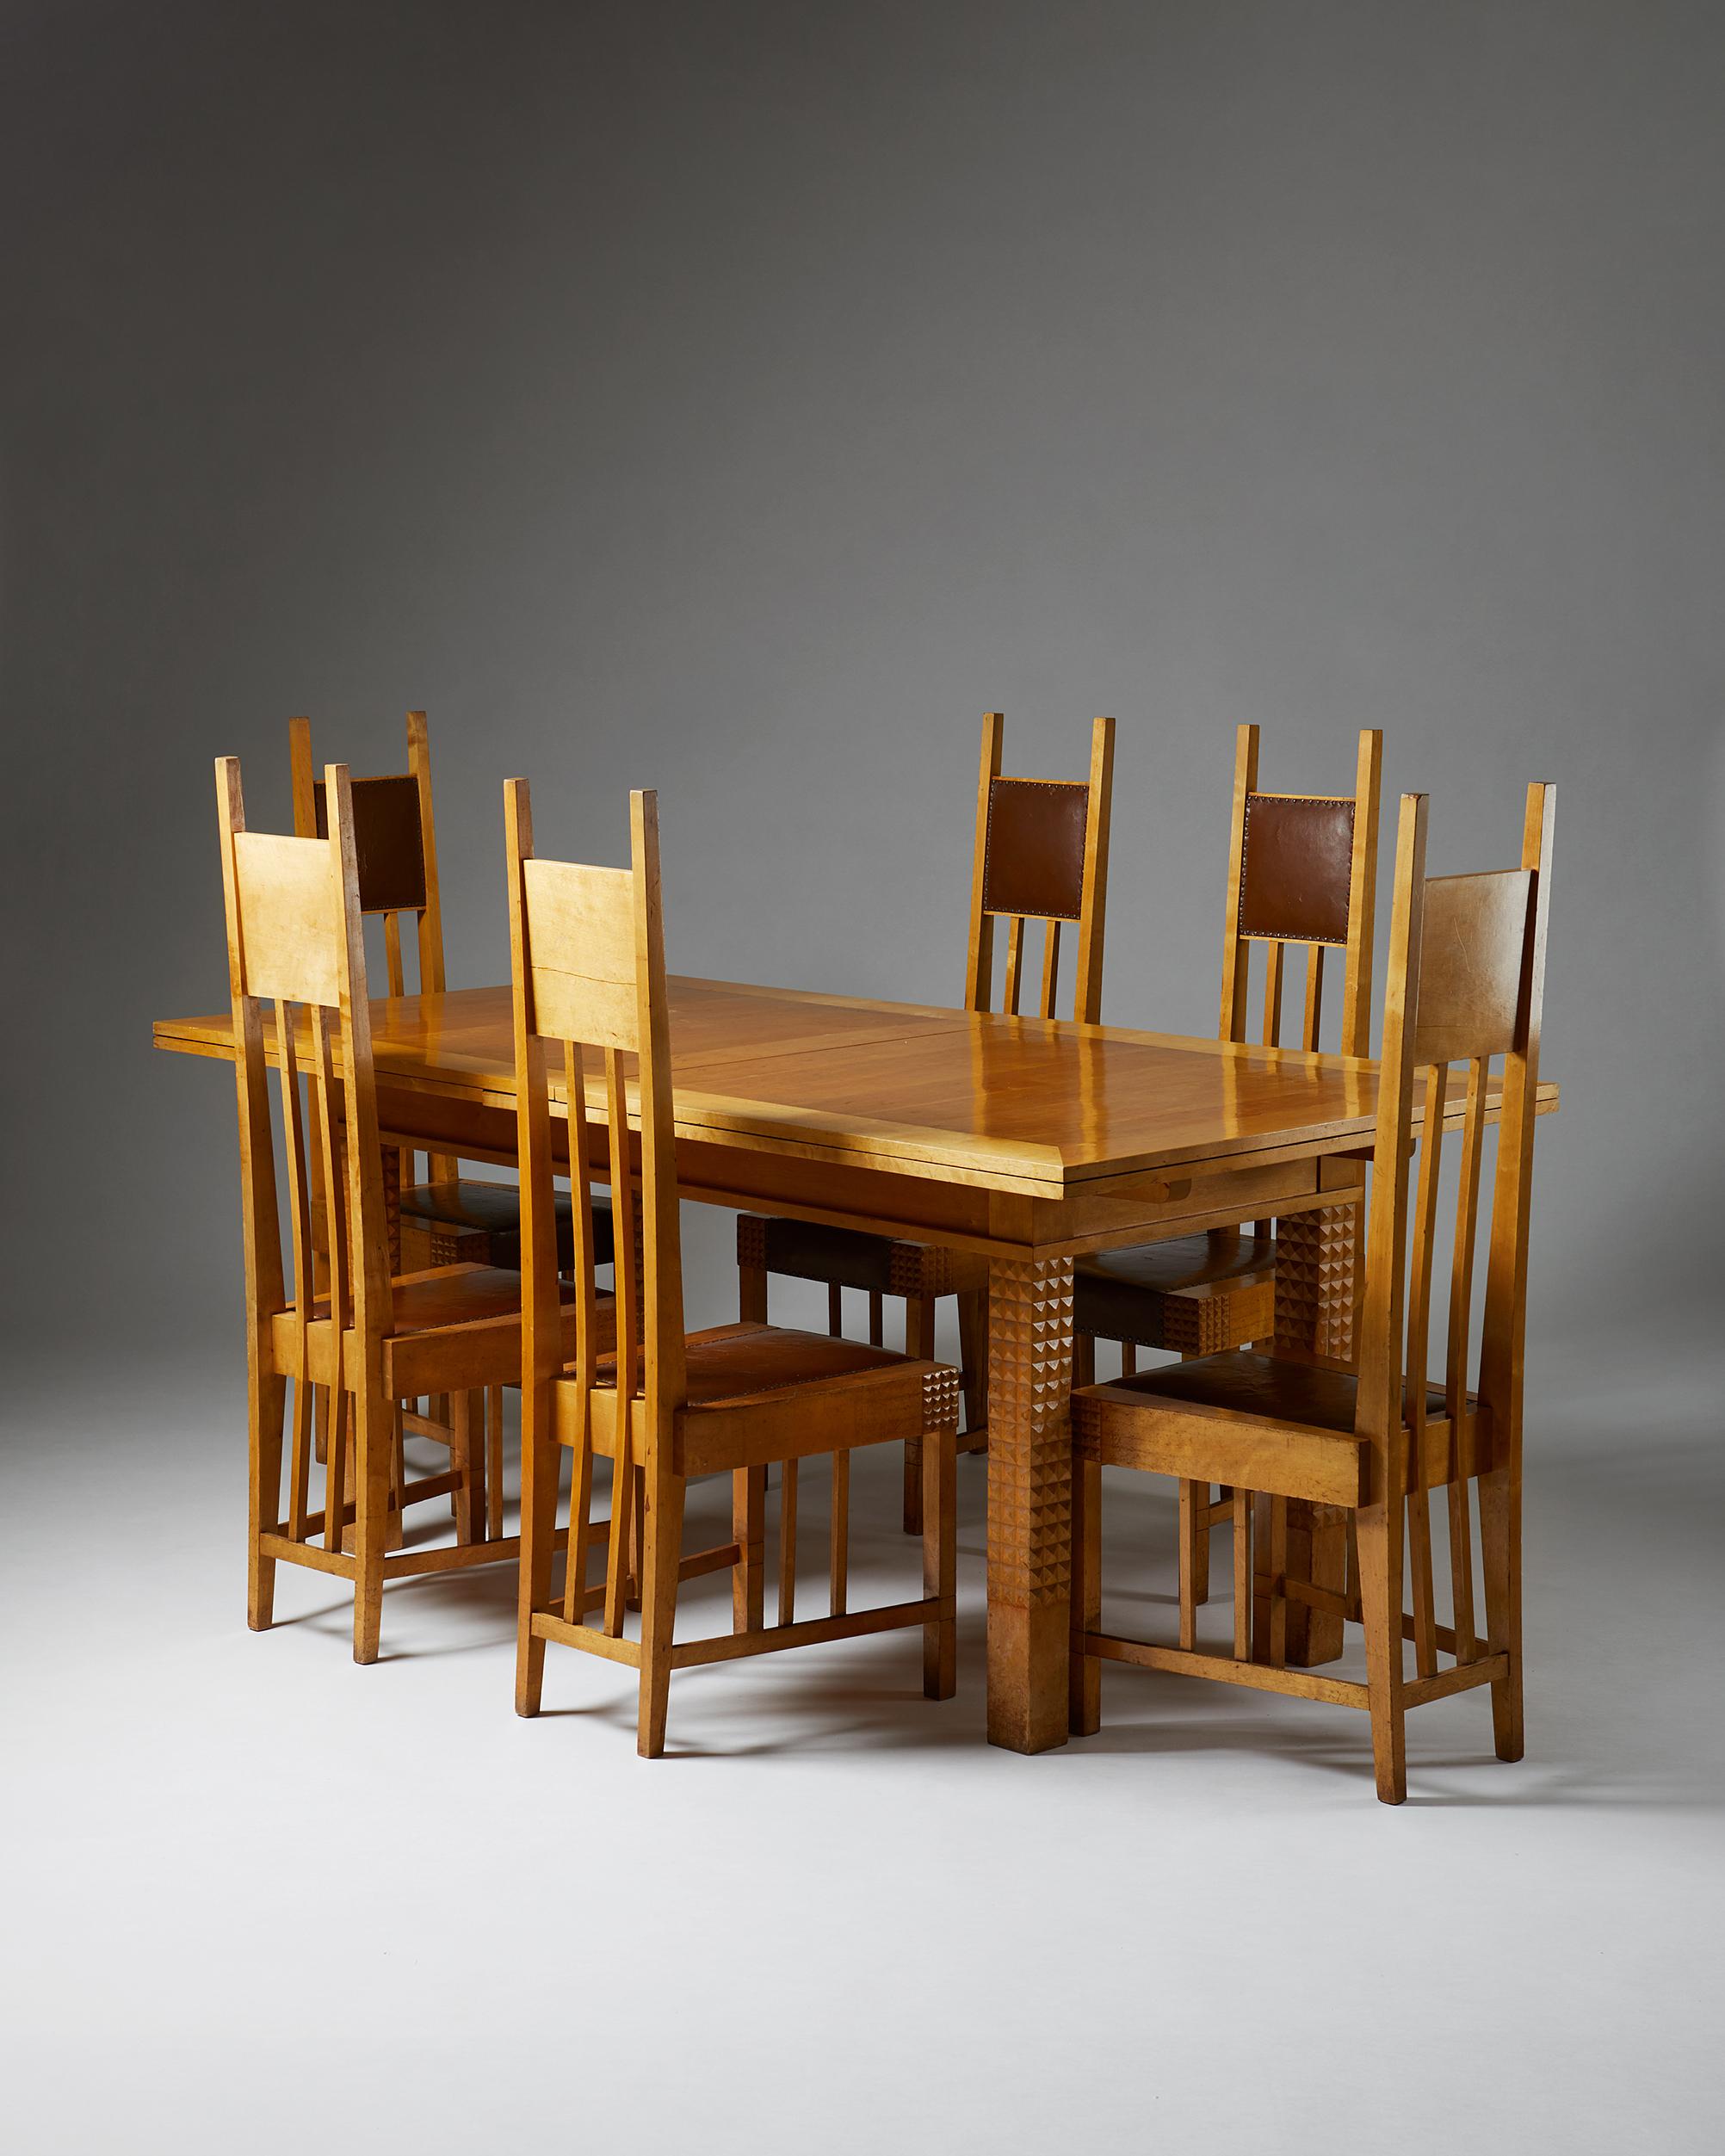 Ensemble de salle à manger conçu par Uno Ullberg pour Hangö Ångsåg & Ångsnickeri AB,
Finlande, 1905.

Bouleau et cuir.

L'ensemble comprend dix chaises de salle à manger et une table de salle à manger.

Uno Ullberg fut l'un des plus importants